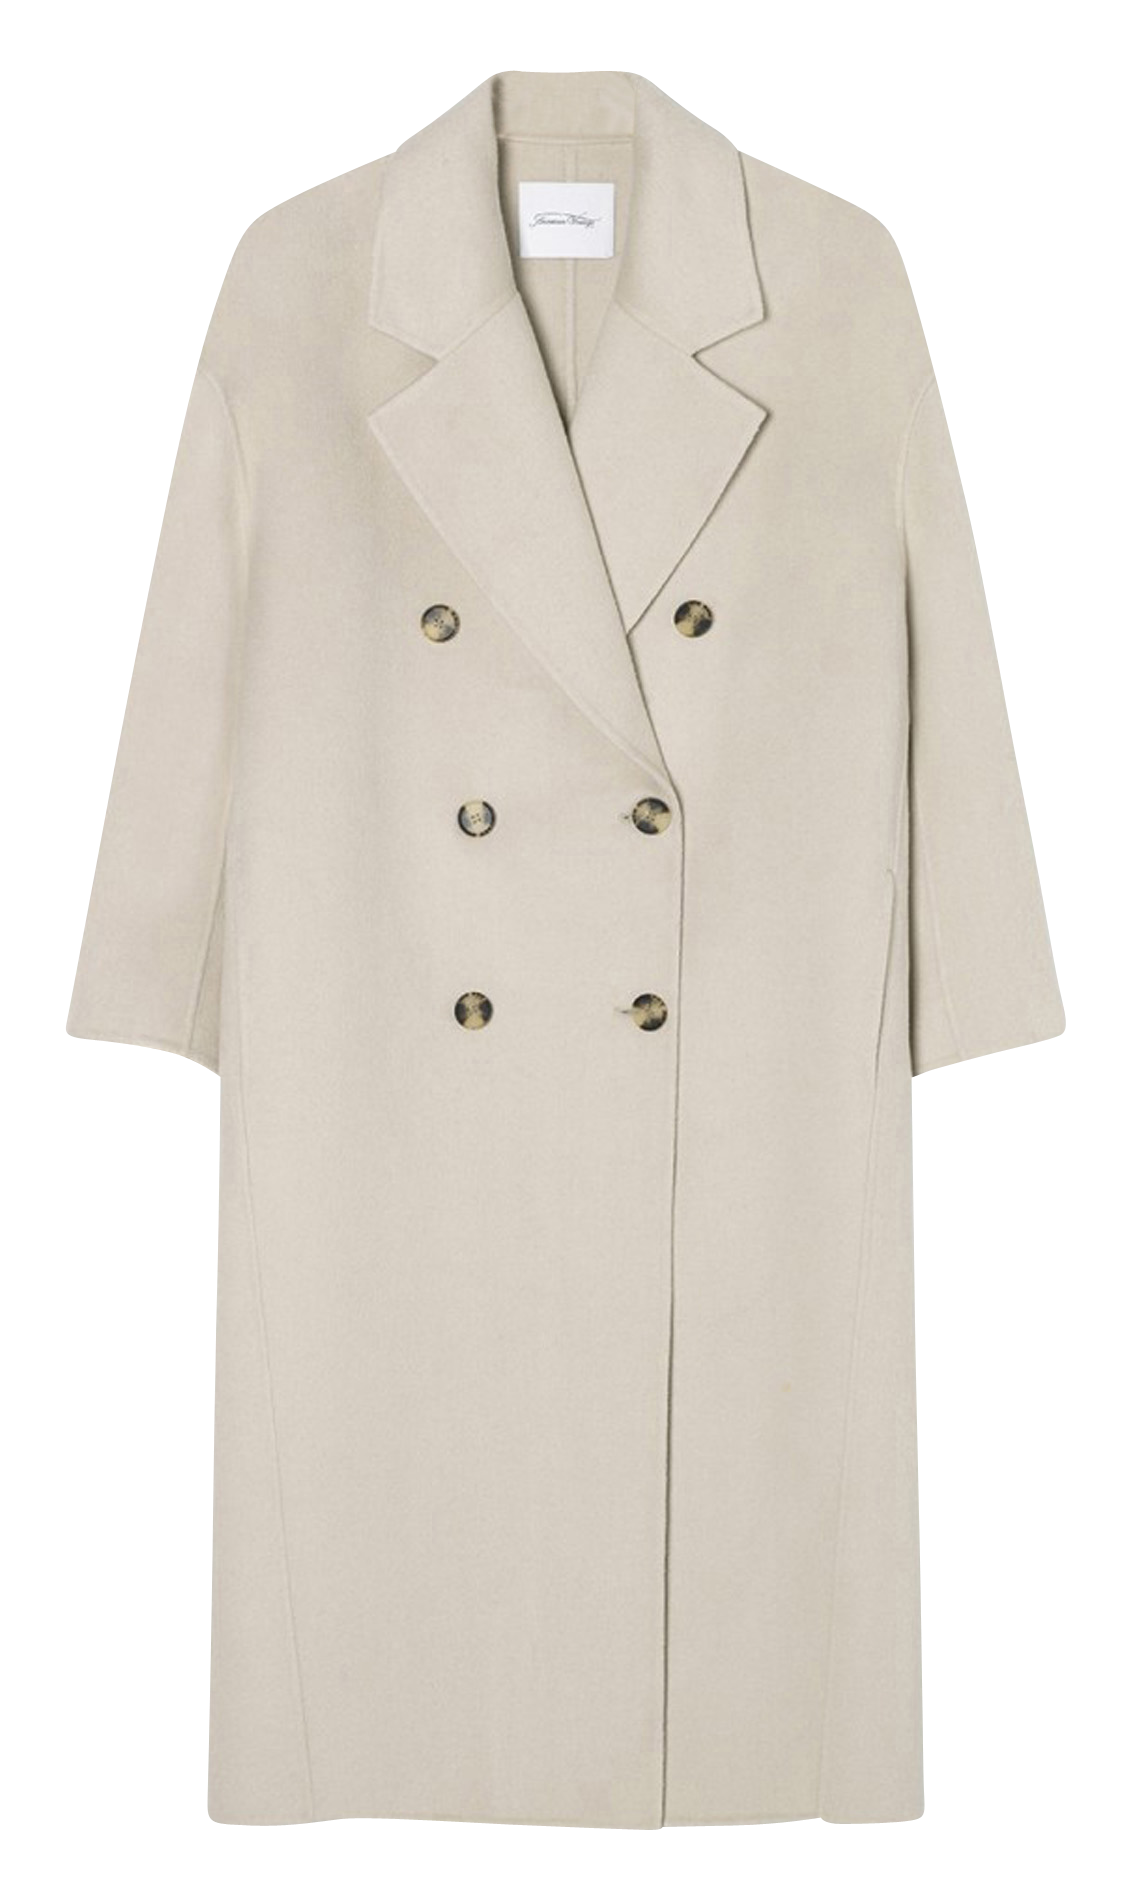 American Vintage Manteau en laine gris clair mouchet\u00e9 style d\u00e9contract\u00e9 Mode Manteaux Manteaux en laine 